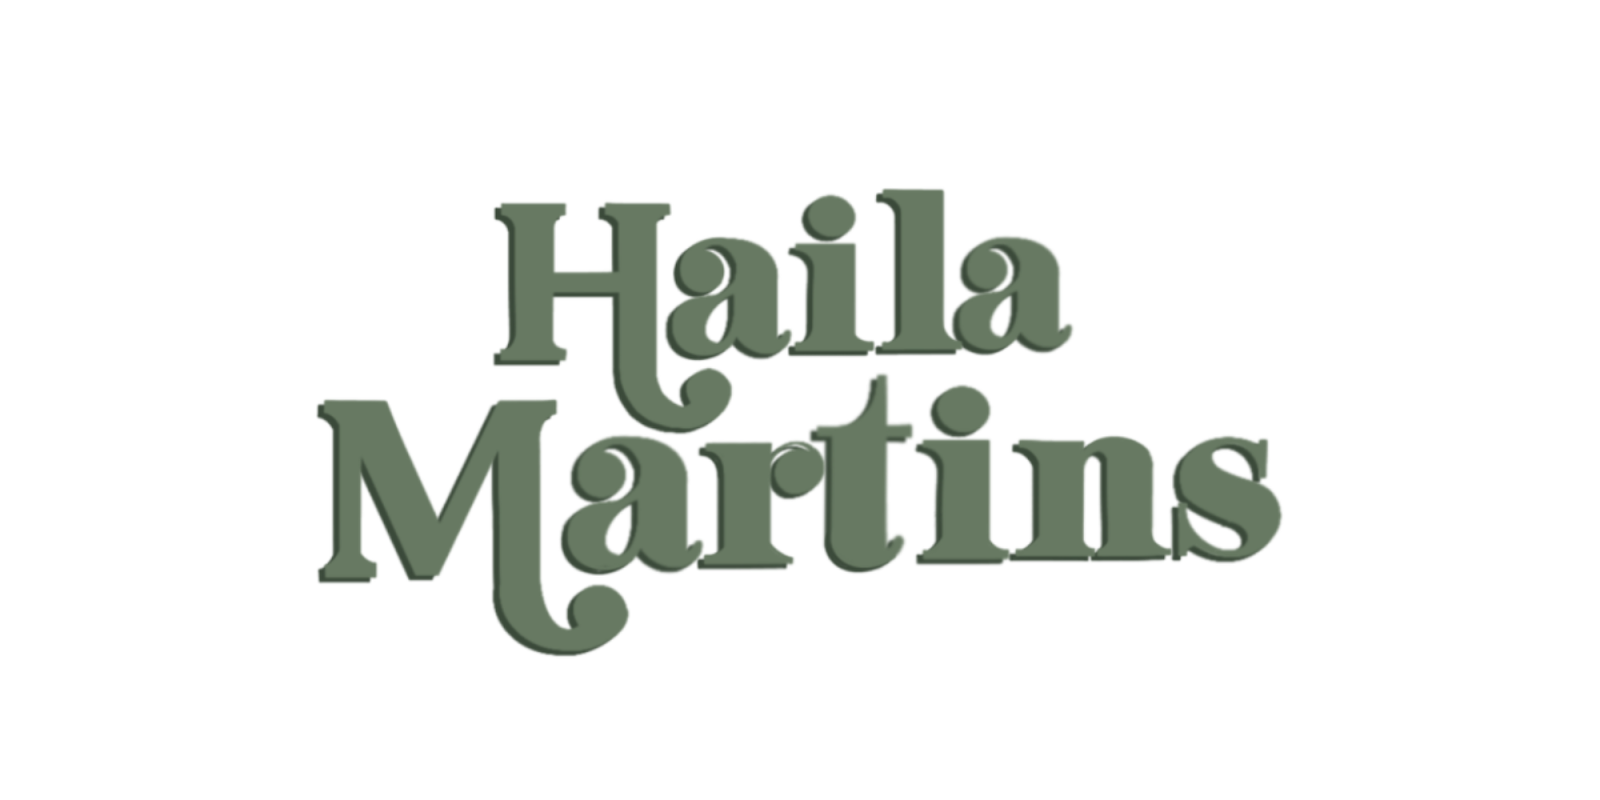 Haila C. Martins